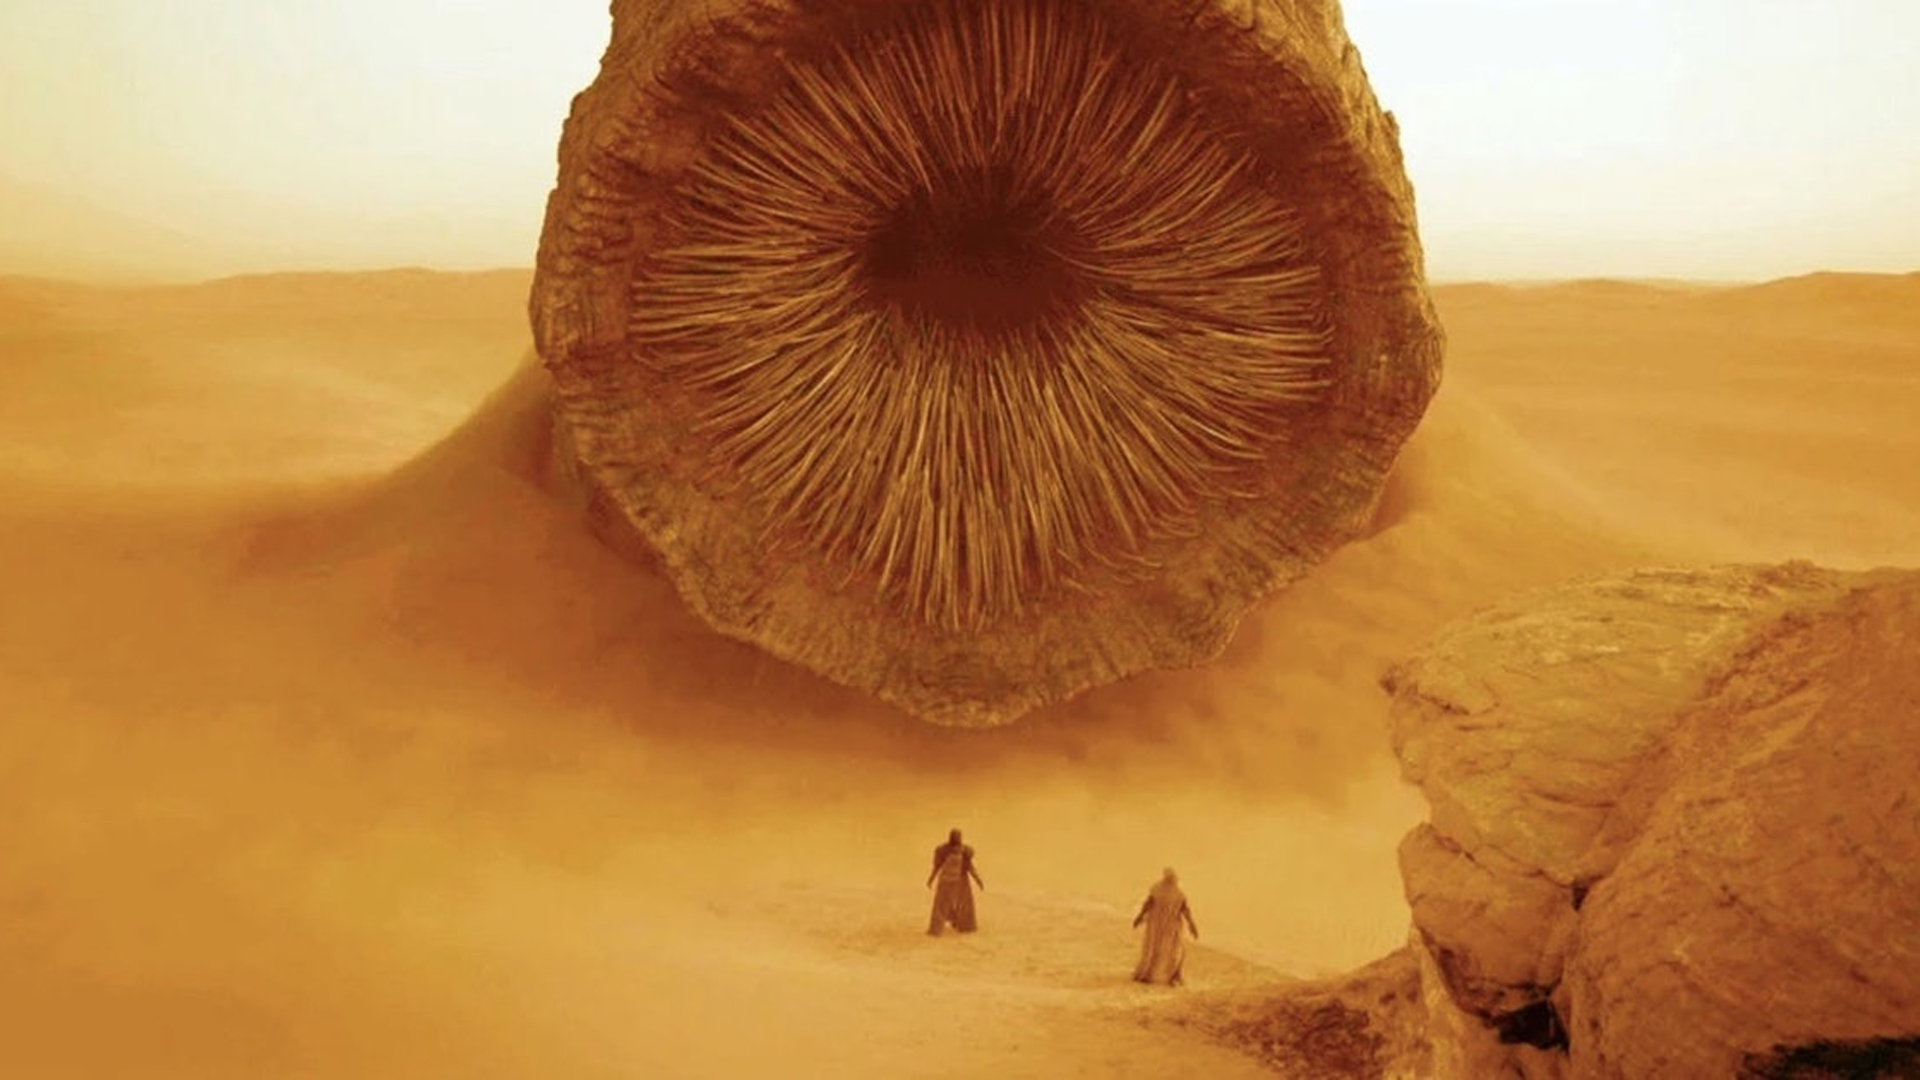 Dune 2 release date